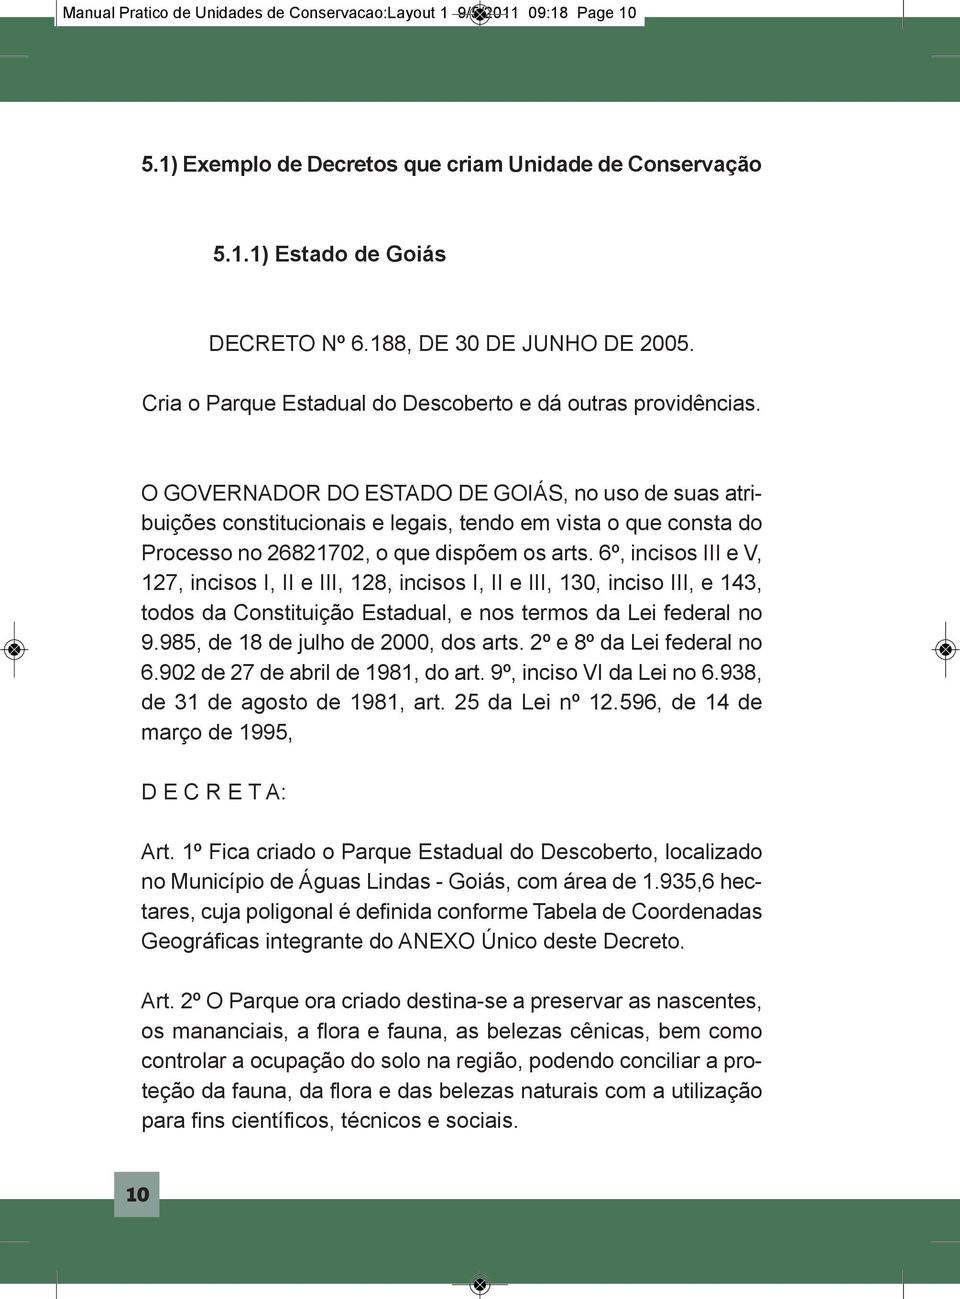 O GOVERNADOR DO ESTADO DE GOIÁS, no uso de suas atribuições constitucionais e legais, tendo em vista o que consta do Processo no 26821702, o que dispõem os arts.